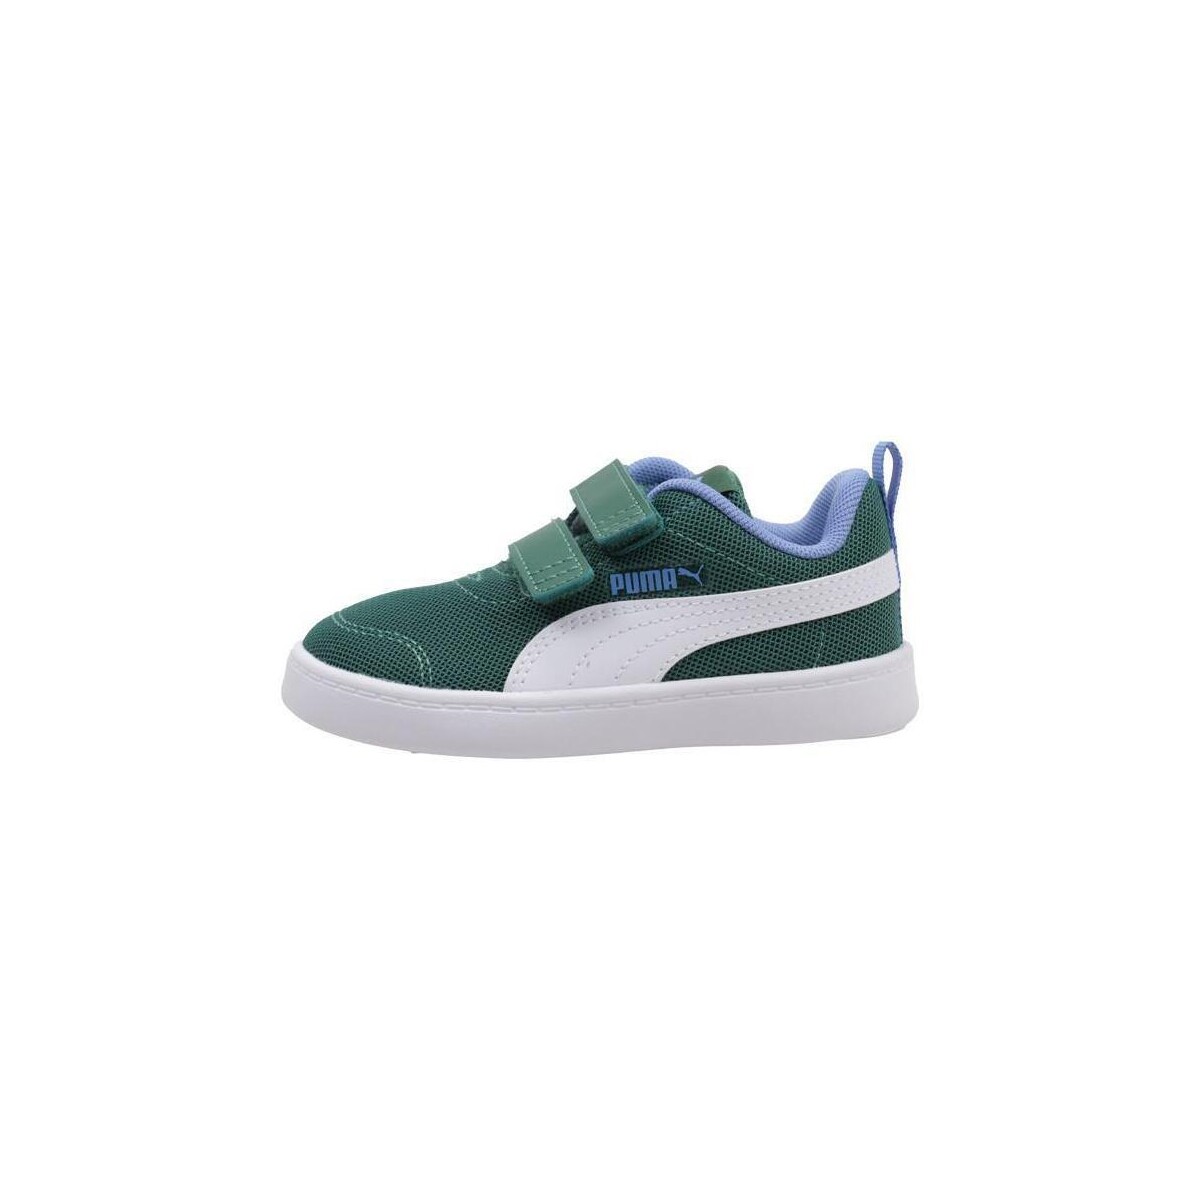 Sapatos Rapaz Sapatilhas Puma COURTFLEX V2 MESH  PS Verde